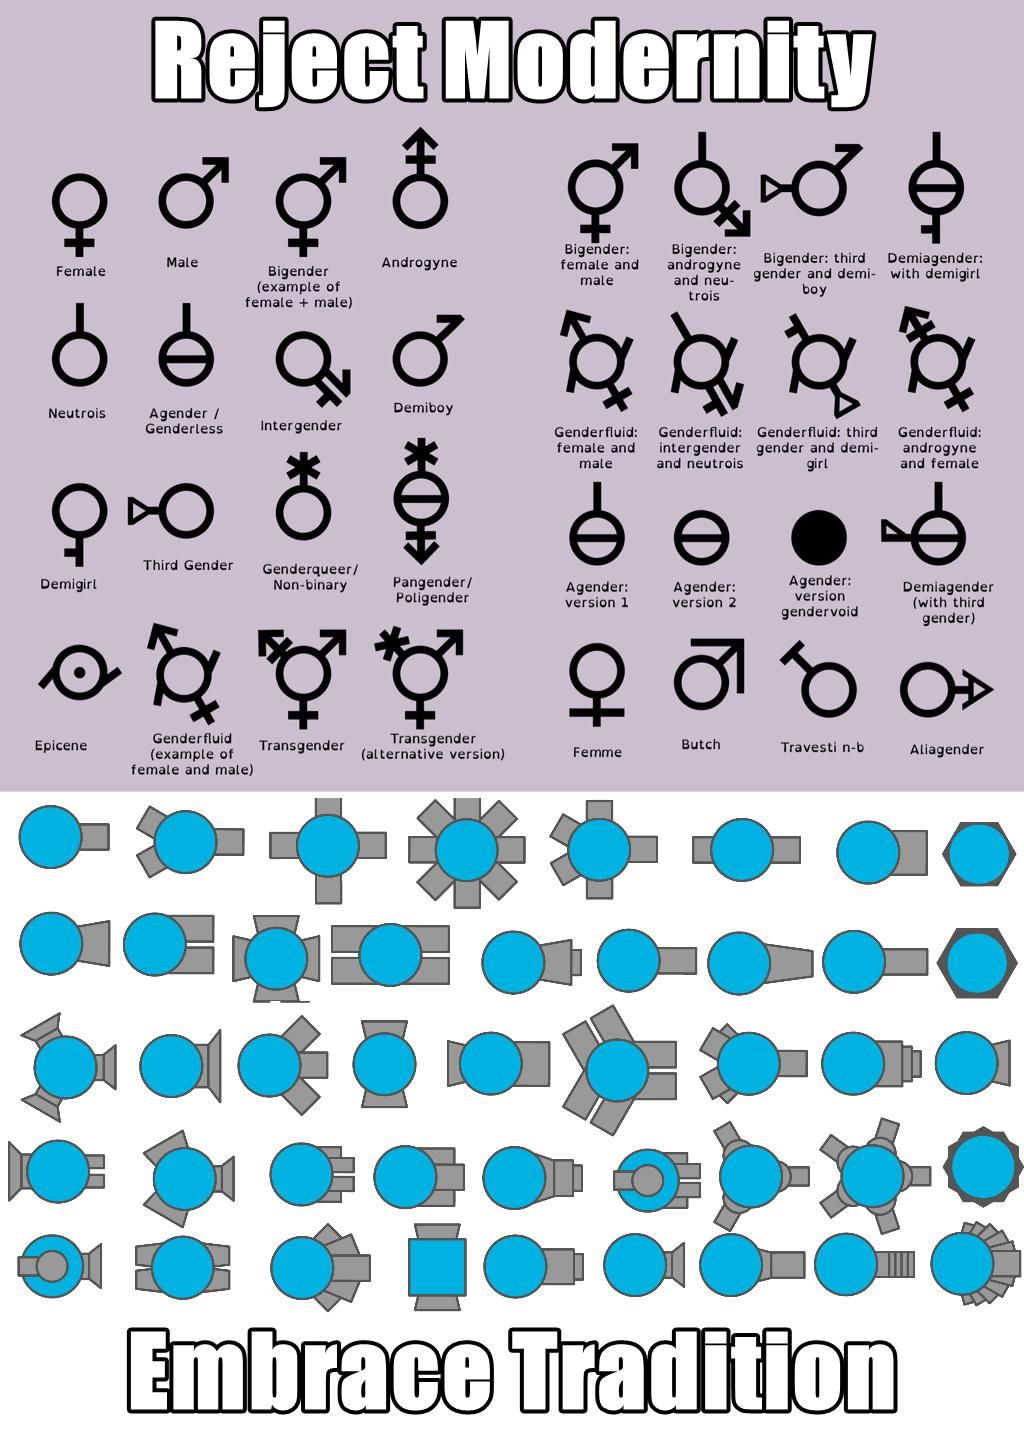 The True Gender List